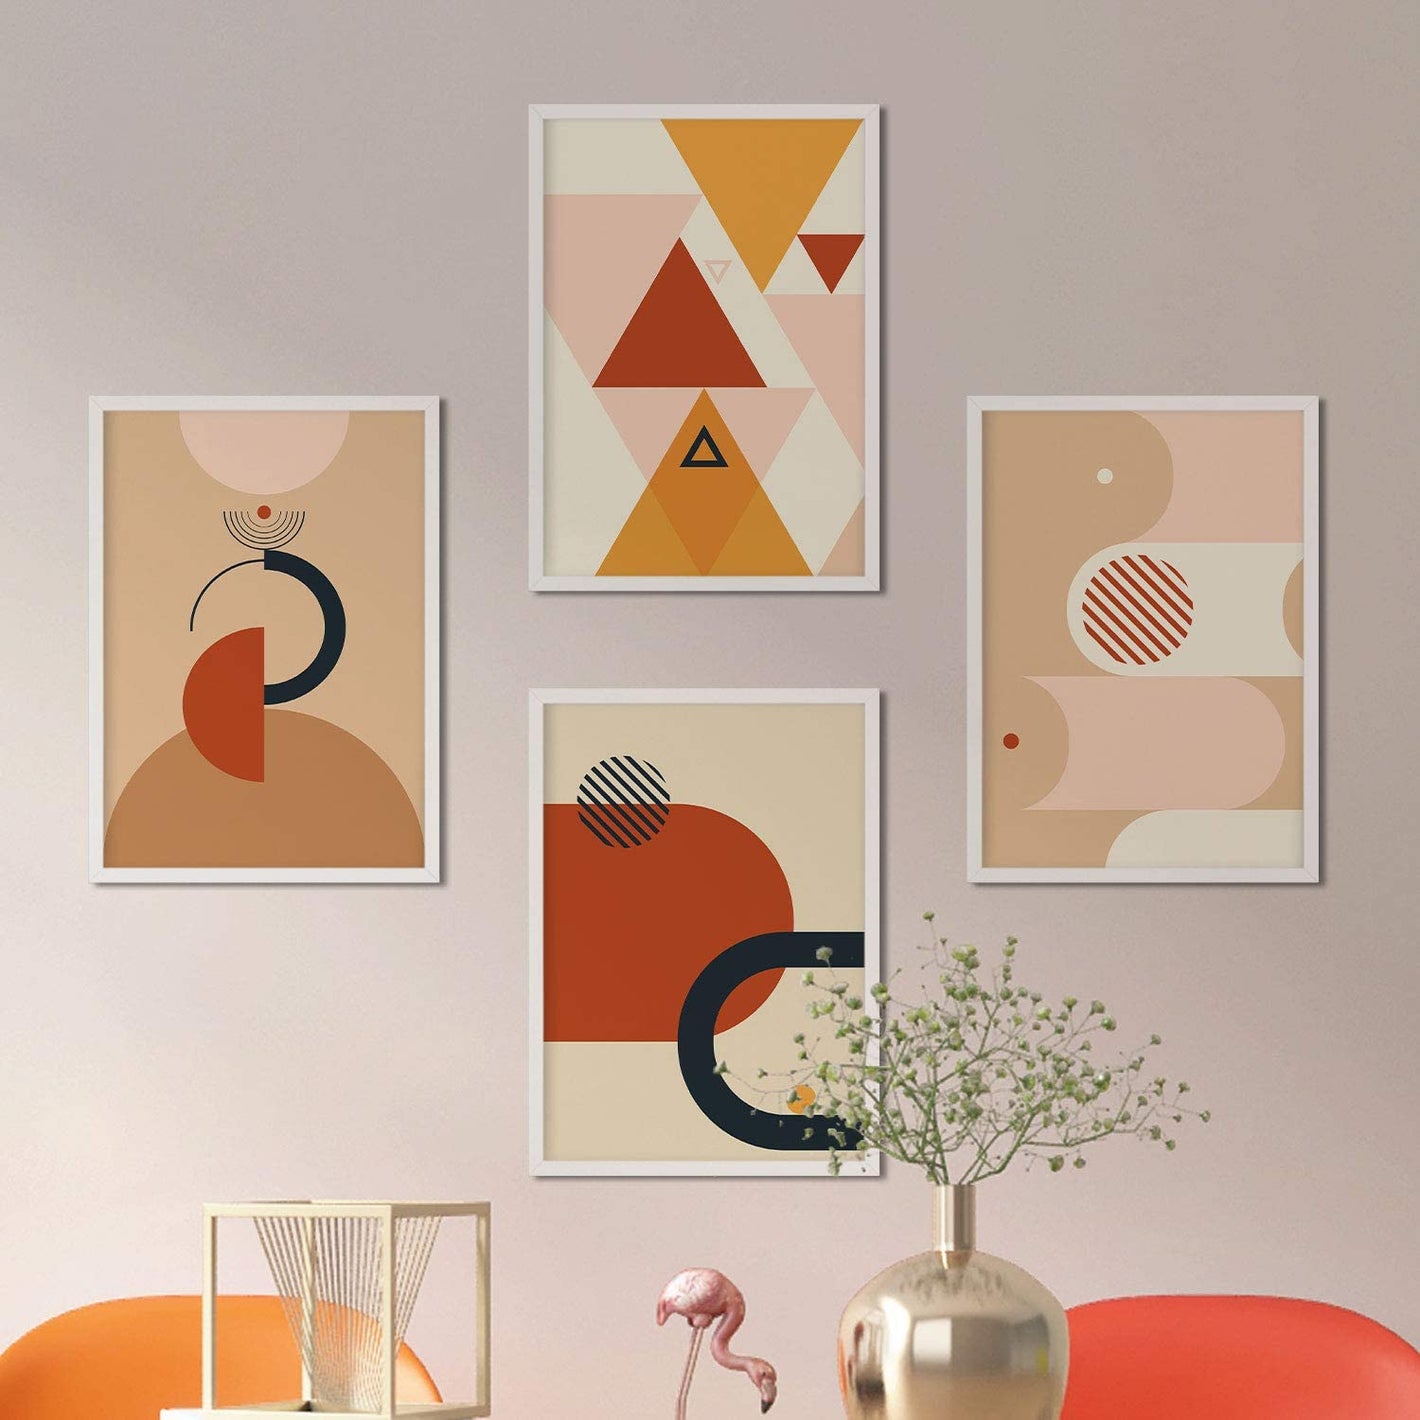 Imagen principal de la colección de Láminas Constructivismo Abstracto: Un conjunto de láminas con diseños geométricos y formas abstractas en tonos tierra y marrones. Estas láminas son ideales para decorar interiores con estilo abstracto y moderno. ¡Entra